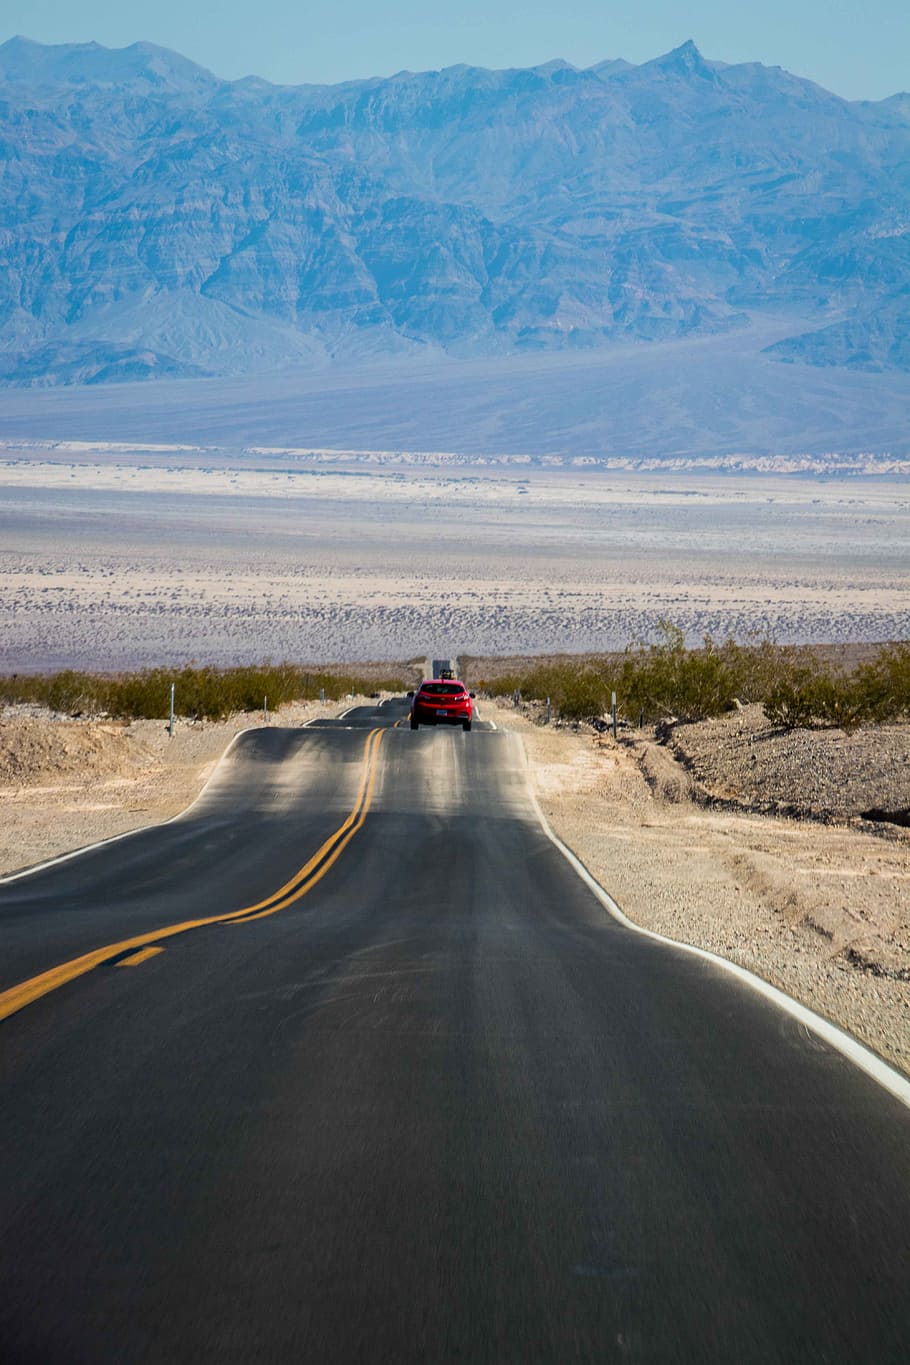 赤, 車, 灰色, コンクリート, 道路, 谷, 死, 砂漠, 高速道路, 自動車